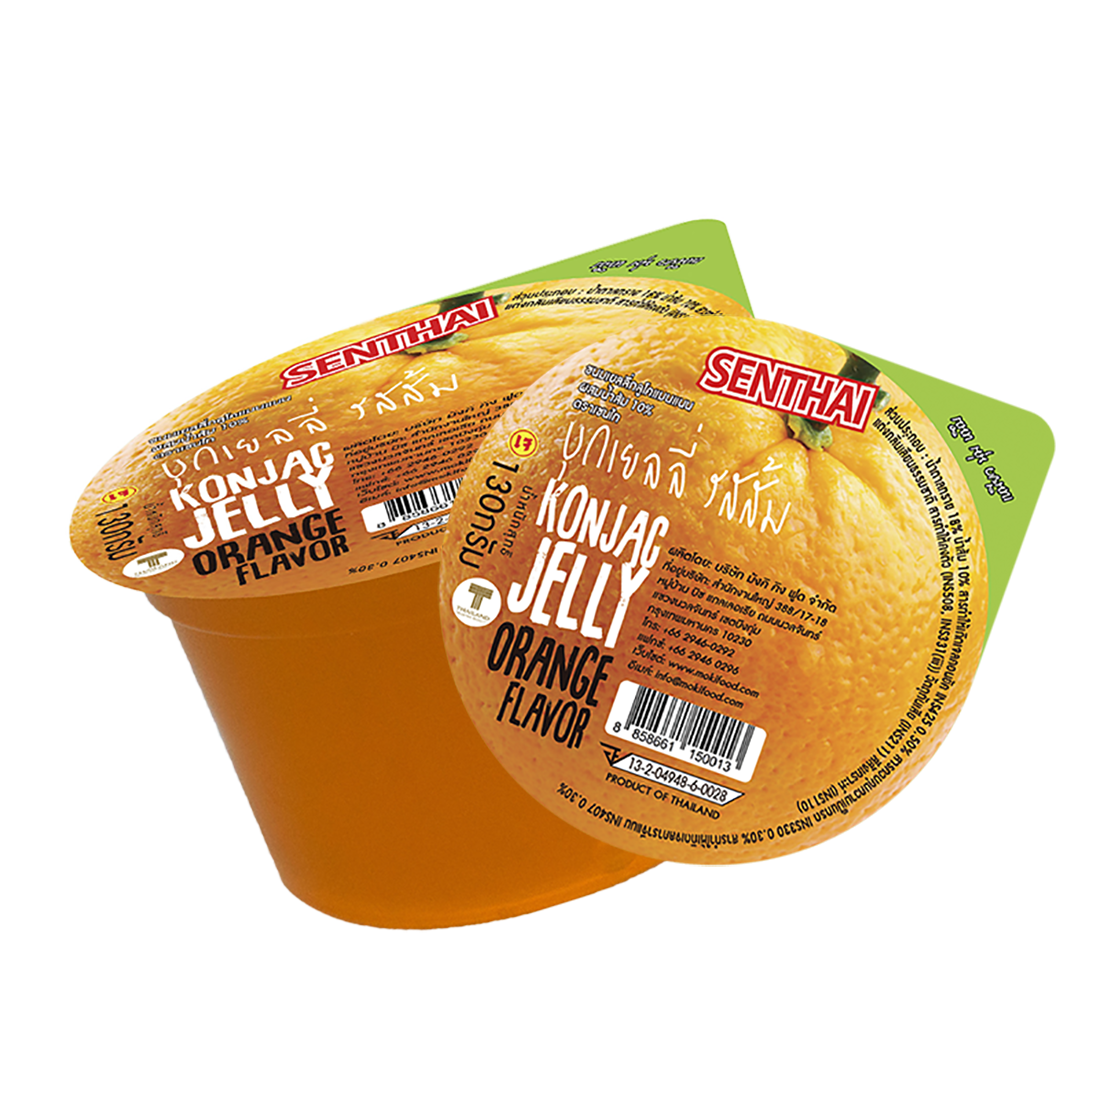 [พร้อมทาน] SENTHAI เยลลี่บุก รสส้ม 130g x 2 Konjac jelly